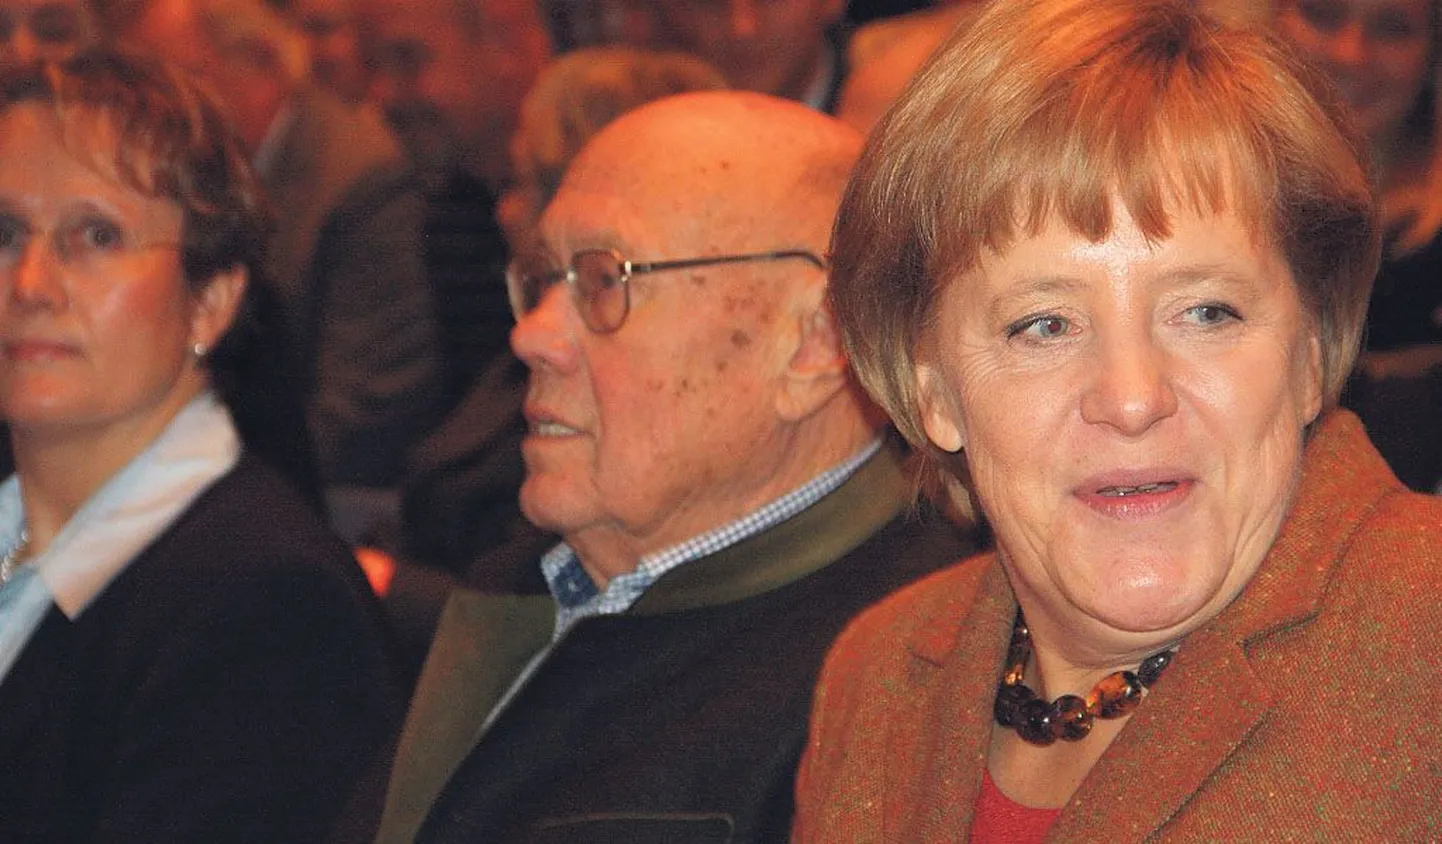 Karlsruhes parteikaaslaste hulgas ennast hästi tundev kantsler Angela Merkel on Saksamaal populaarsem kui kunagi varem. Sügisene valimisvõit ja uus võimuliit sõltuvad siiski sellest, kuidas läheb koalitsioonipartneritel.